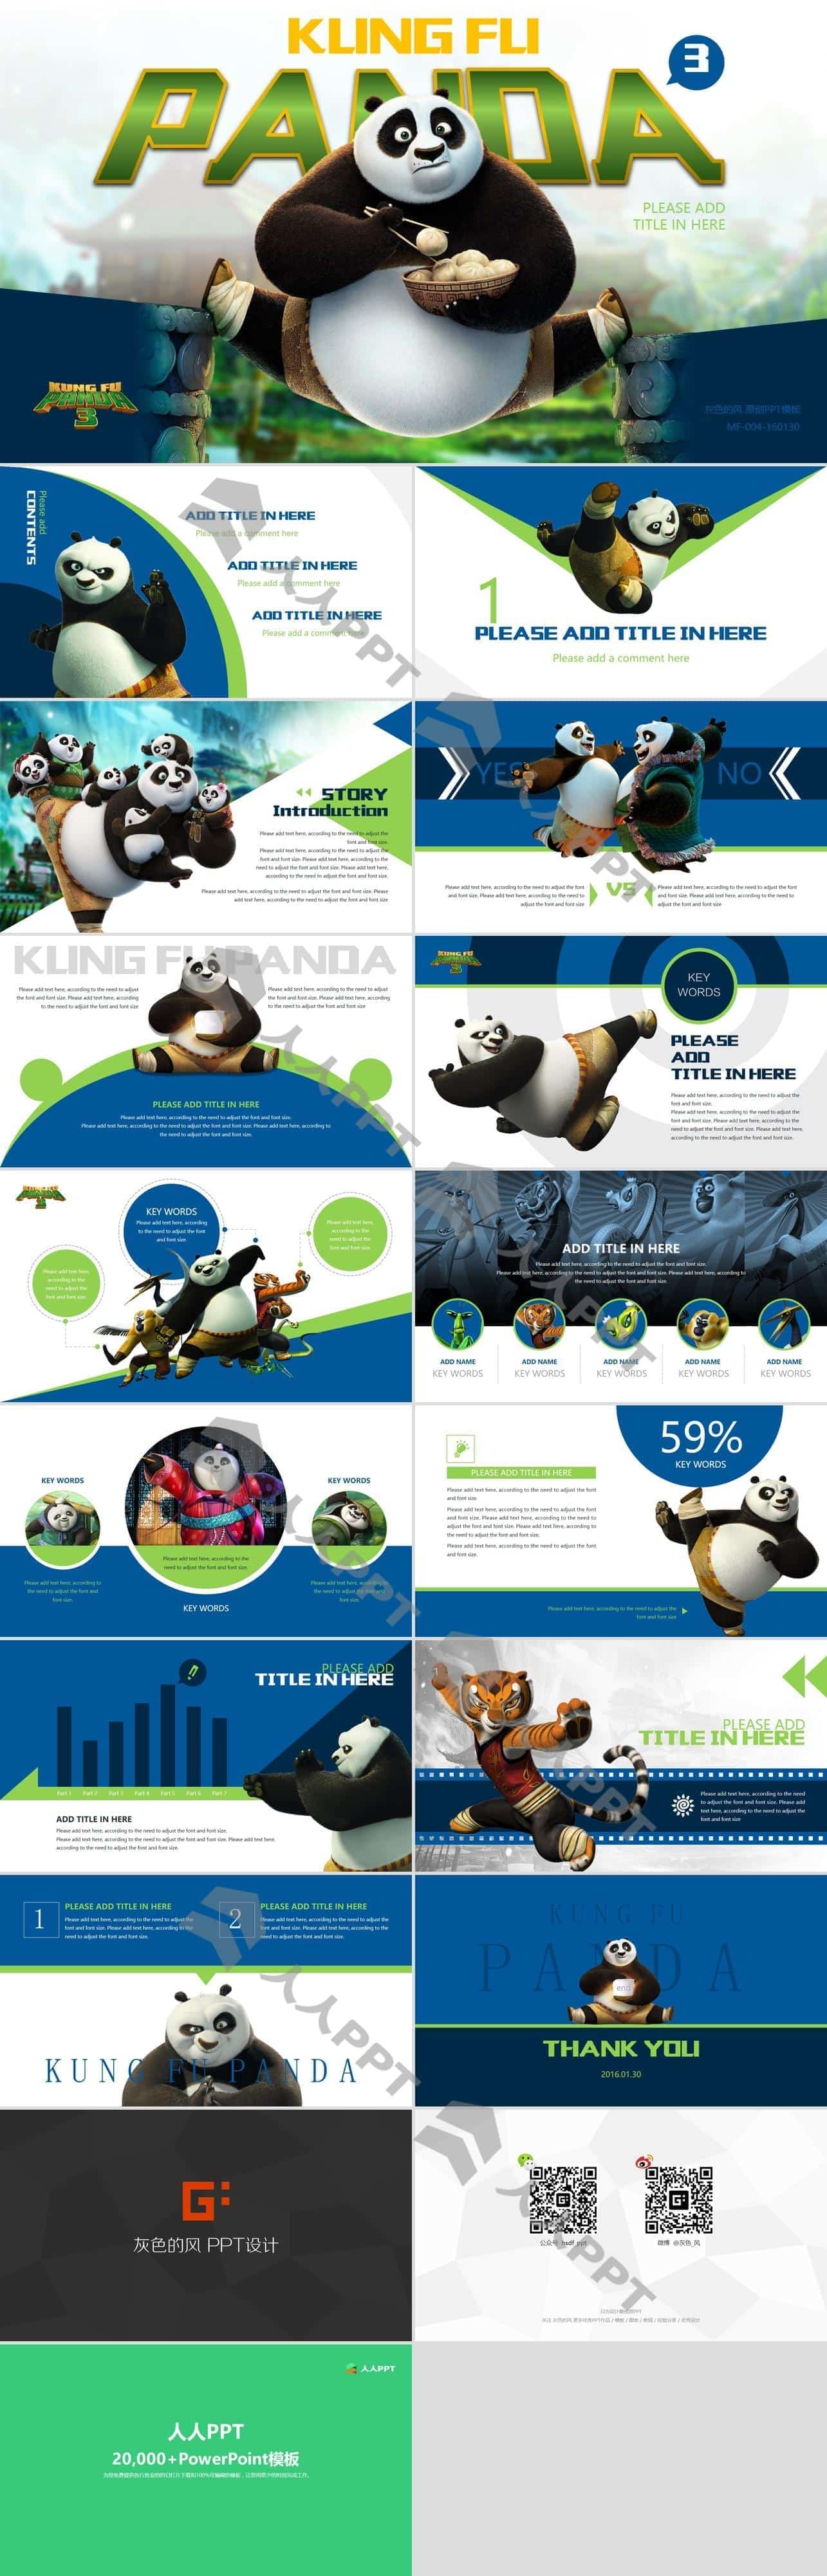 《功夫熊猫3》动画电影大片PPT模板长图